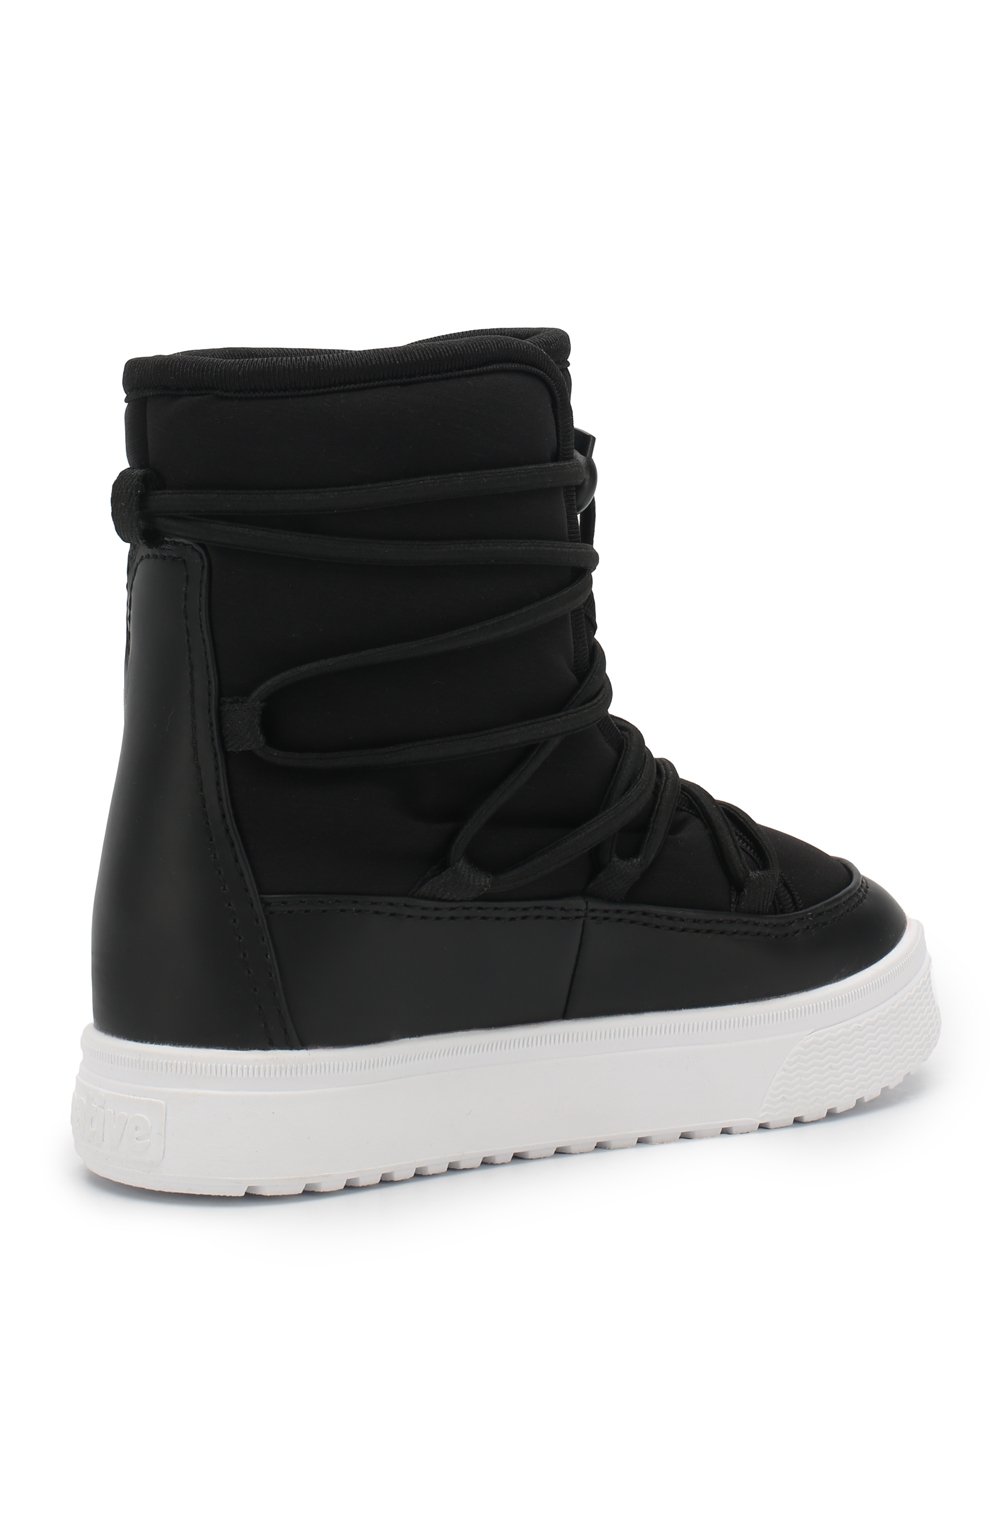 Утепленные ботинки Chamonix NATIVE детские черного цвета — купить винтернет-магазине ЦУМ, арт. 43106000-1105